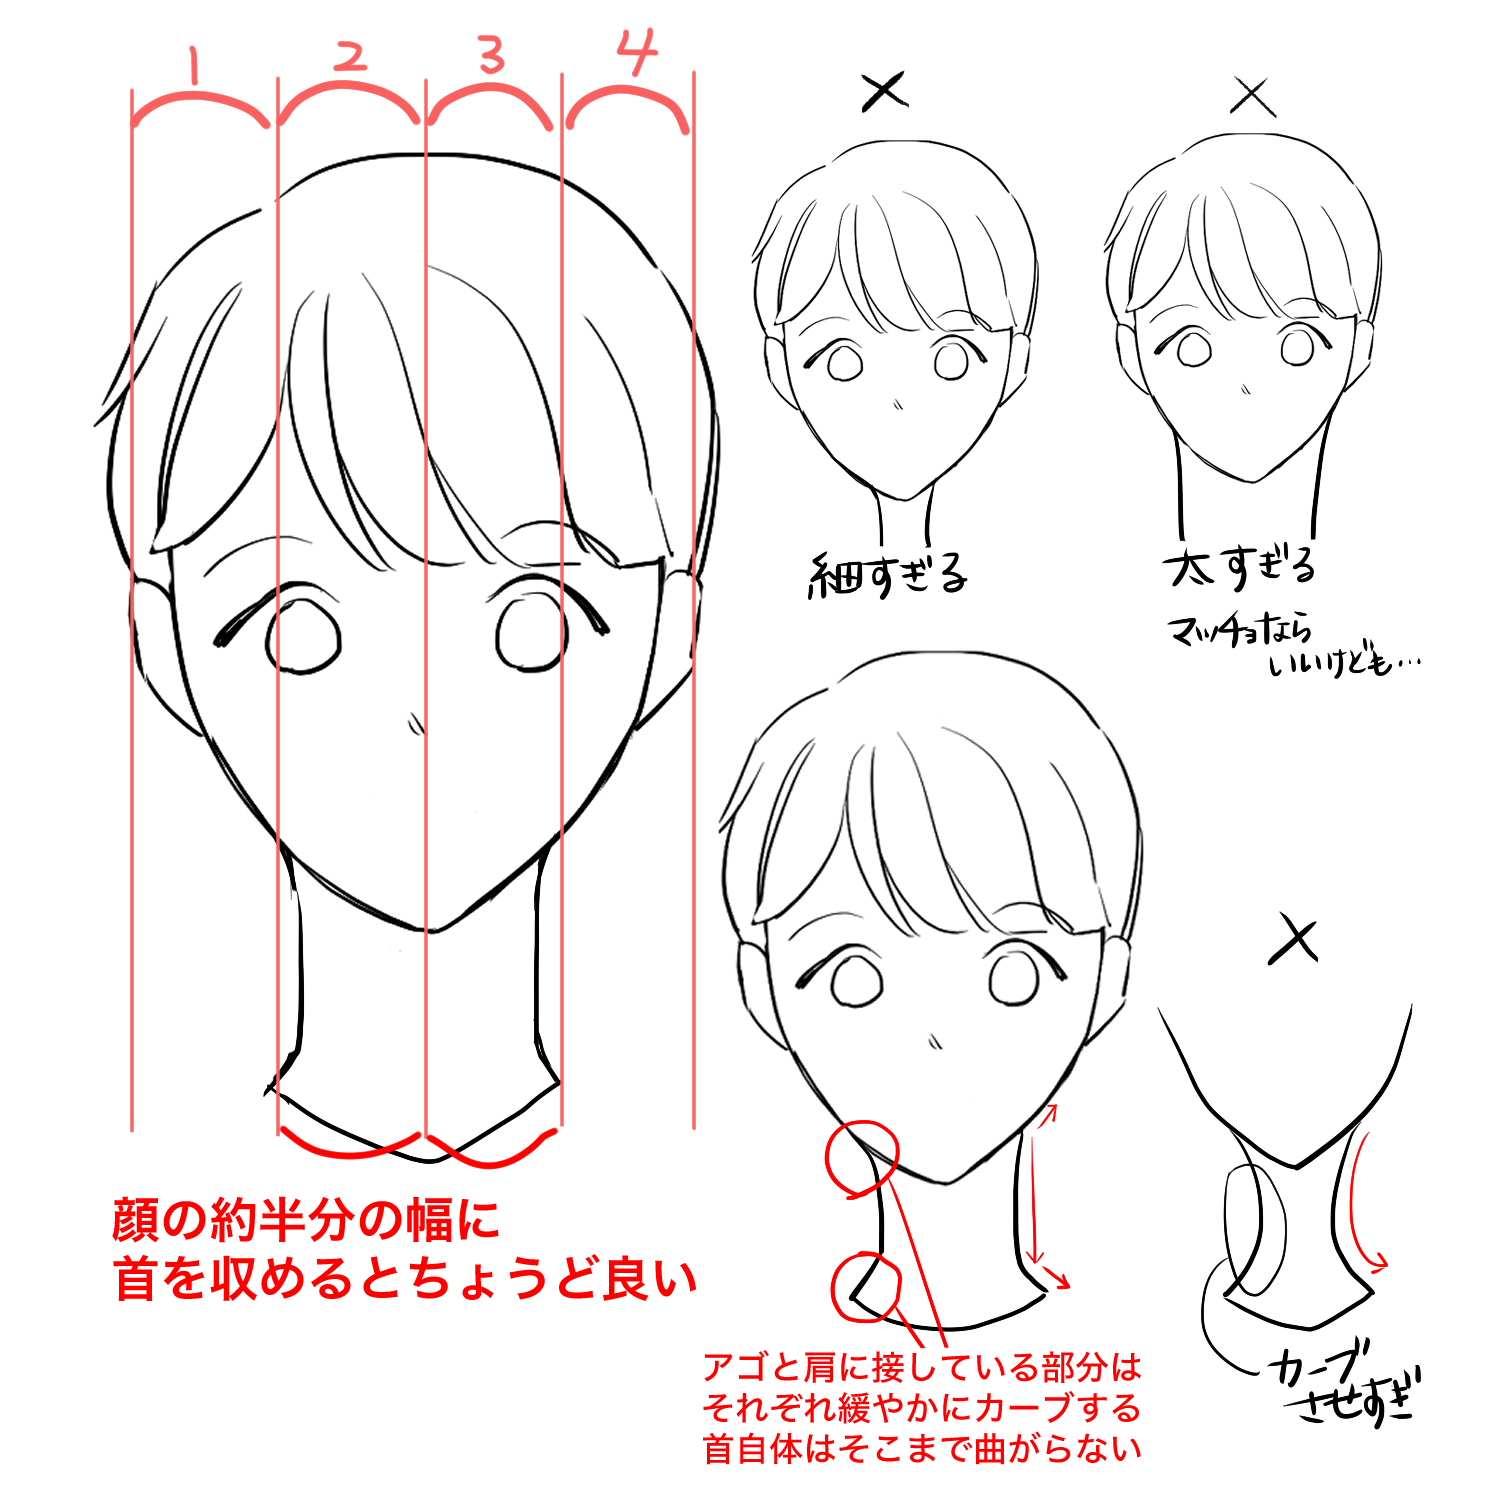 初心者向け 首の描き方を学ぼう Medibang Paint 無料のイラスト マンガ制作ツール